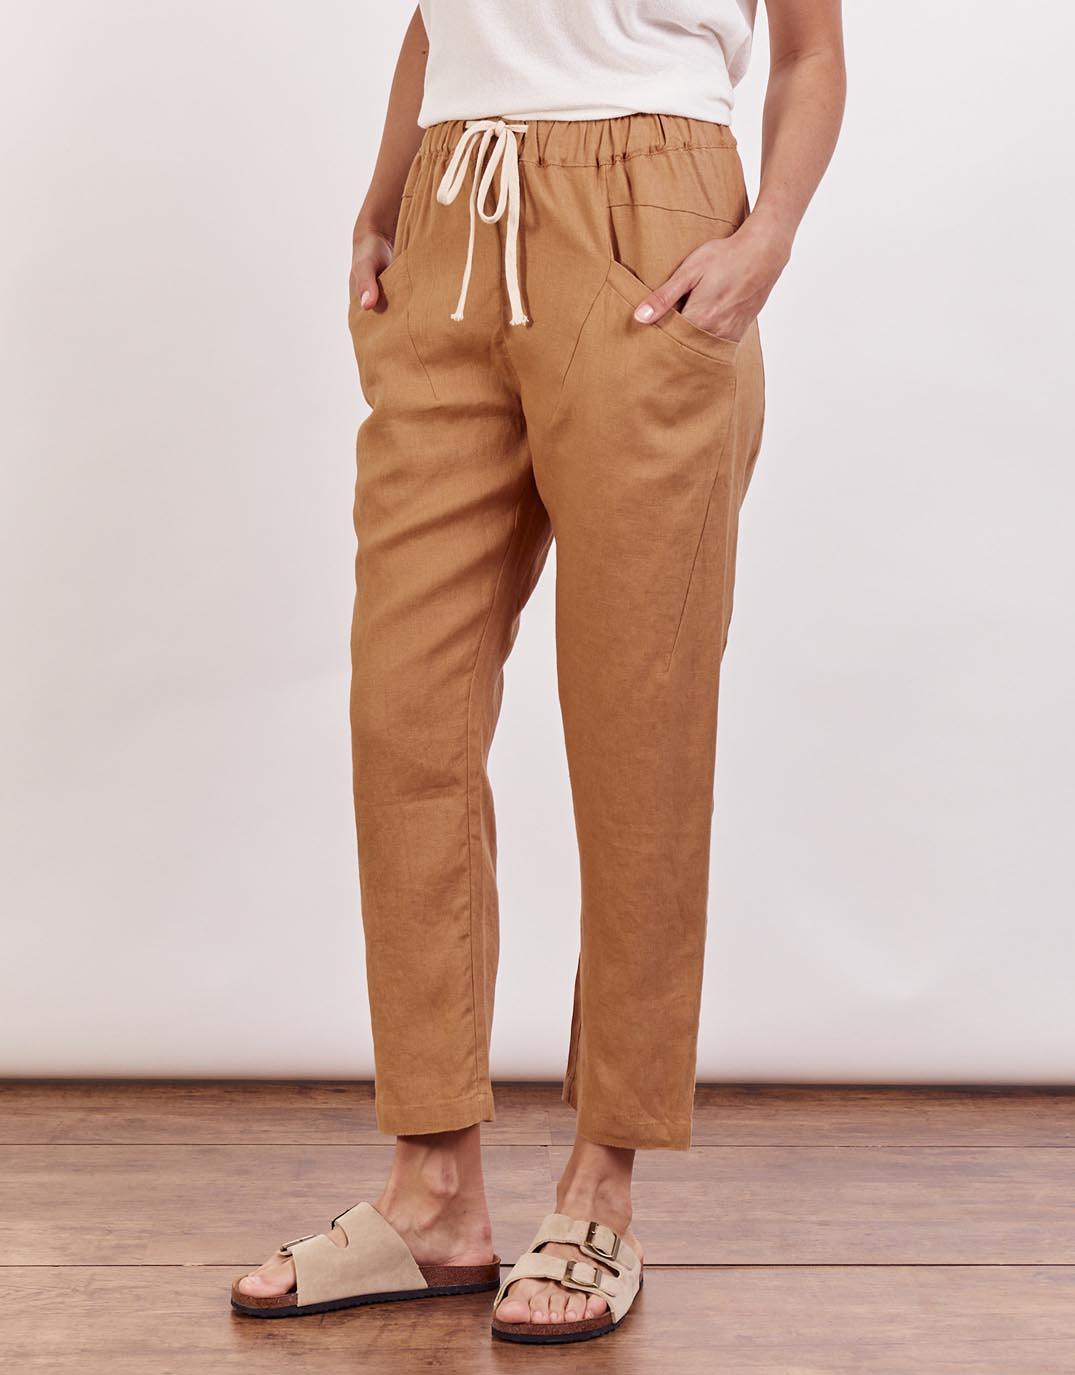 Little Lies - Luxe Linen Pants - Caramel - paulaglazebrook Pants